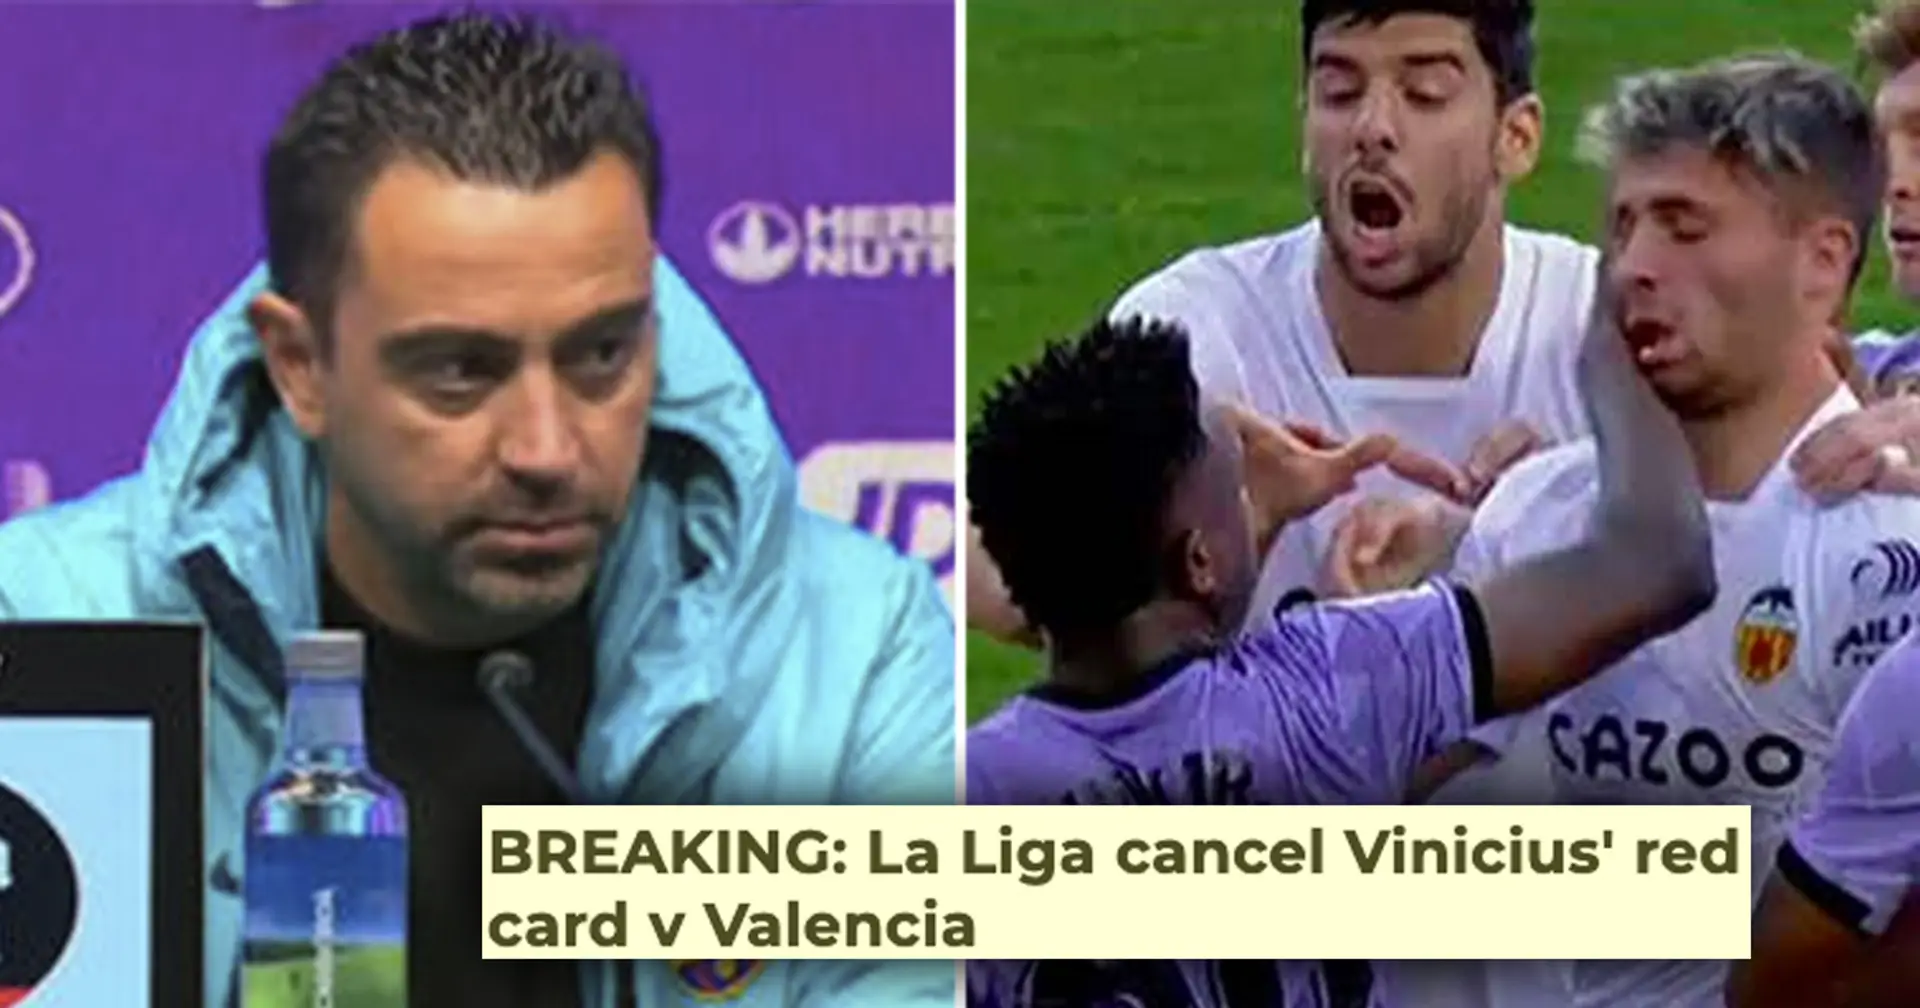 "Ich bin sehr überrascht": Xavi reagiert auf die Annullierung von Vinicius' roter Karte durch La Liga wegen Rassismus